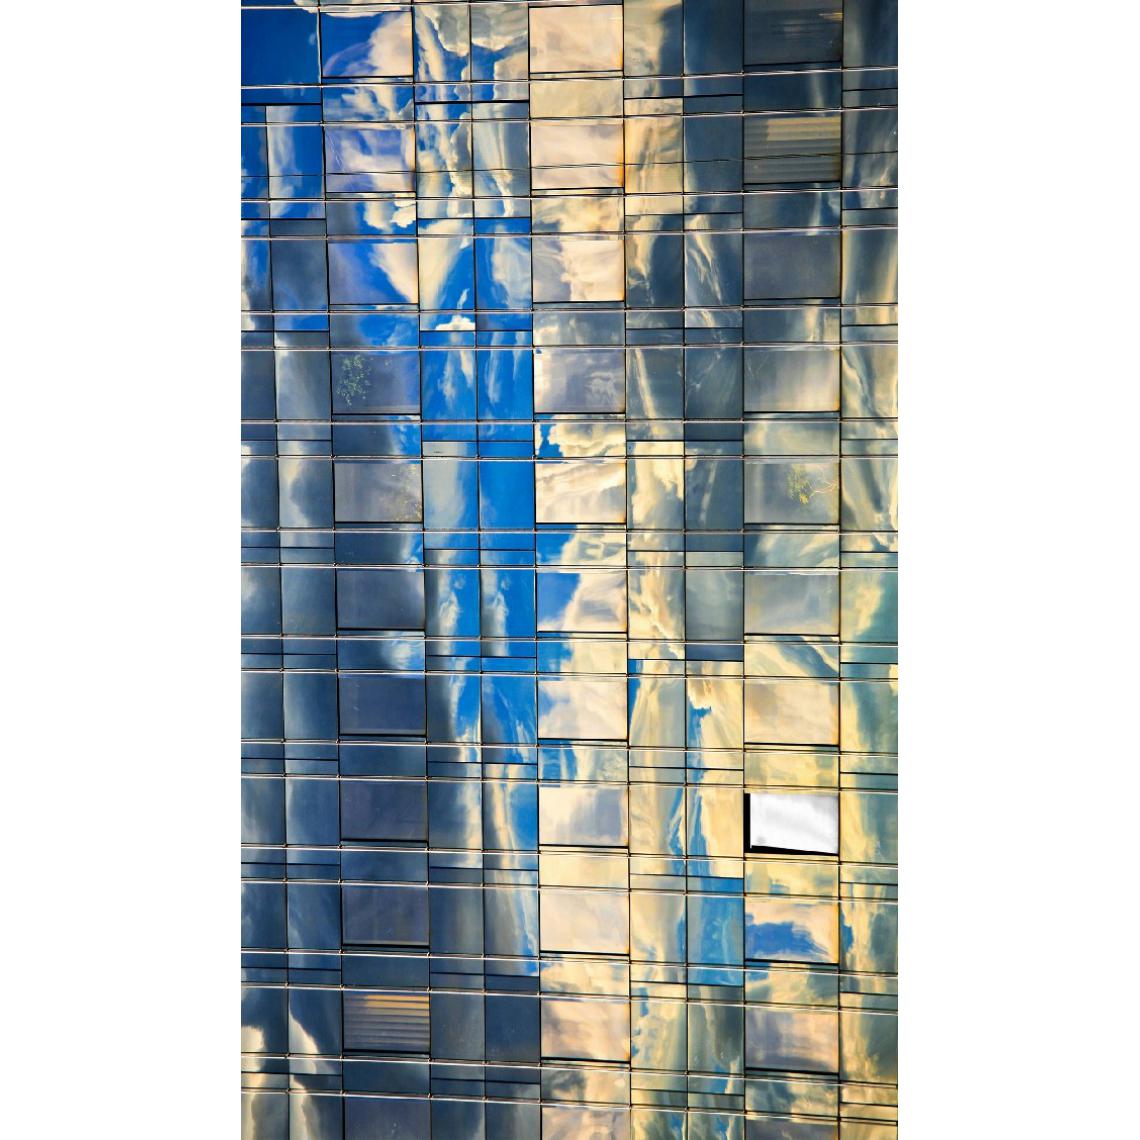 Homemania - HOMEMANIA Tapis Imprimé Glass 1 - Géométrique - Décoration de Maison - Antidérapant - Pour Salon, séjour, chambre à coucher - Multicolore en Polyester, Coton, 100 x 200 cm - Tapis